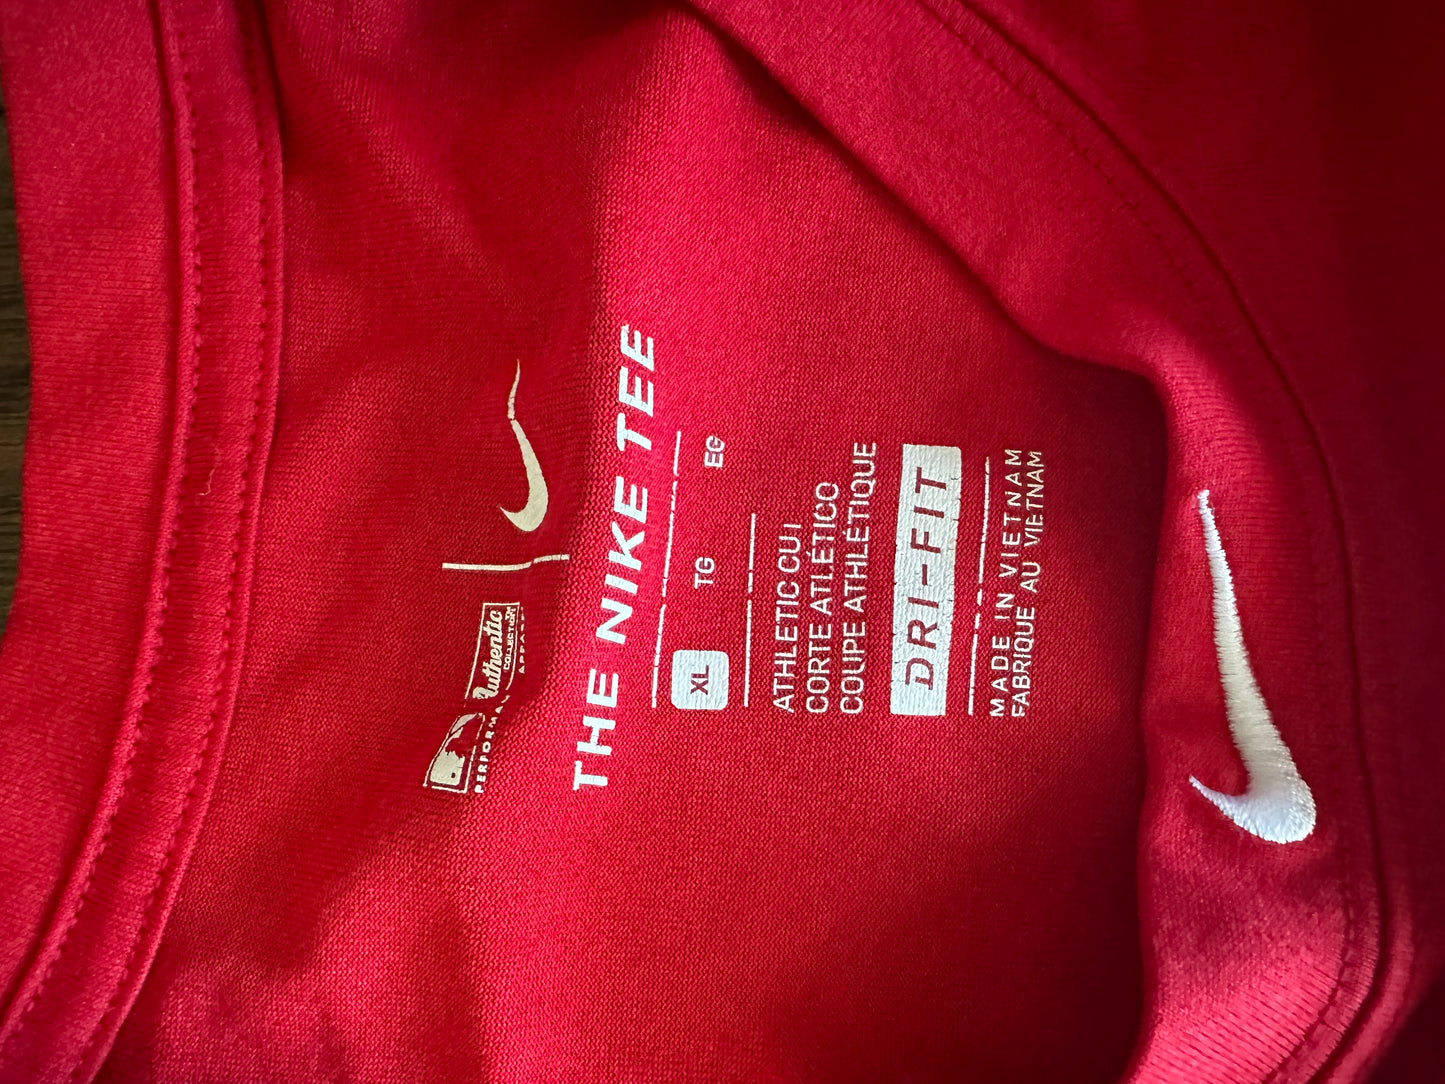 Texas Rangers Shirt - Red - XL slim